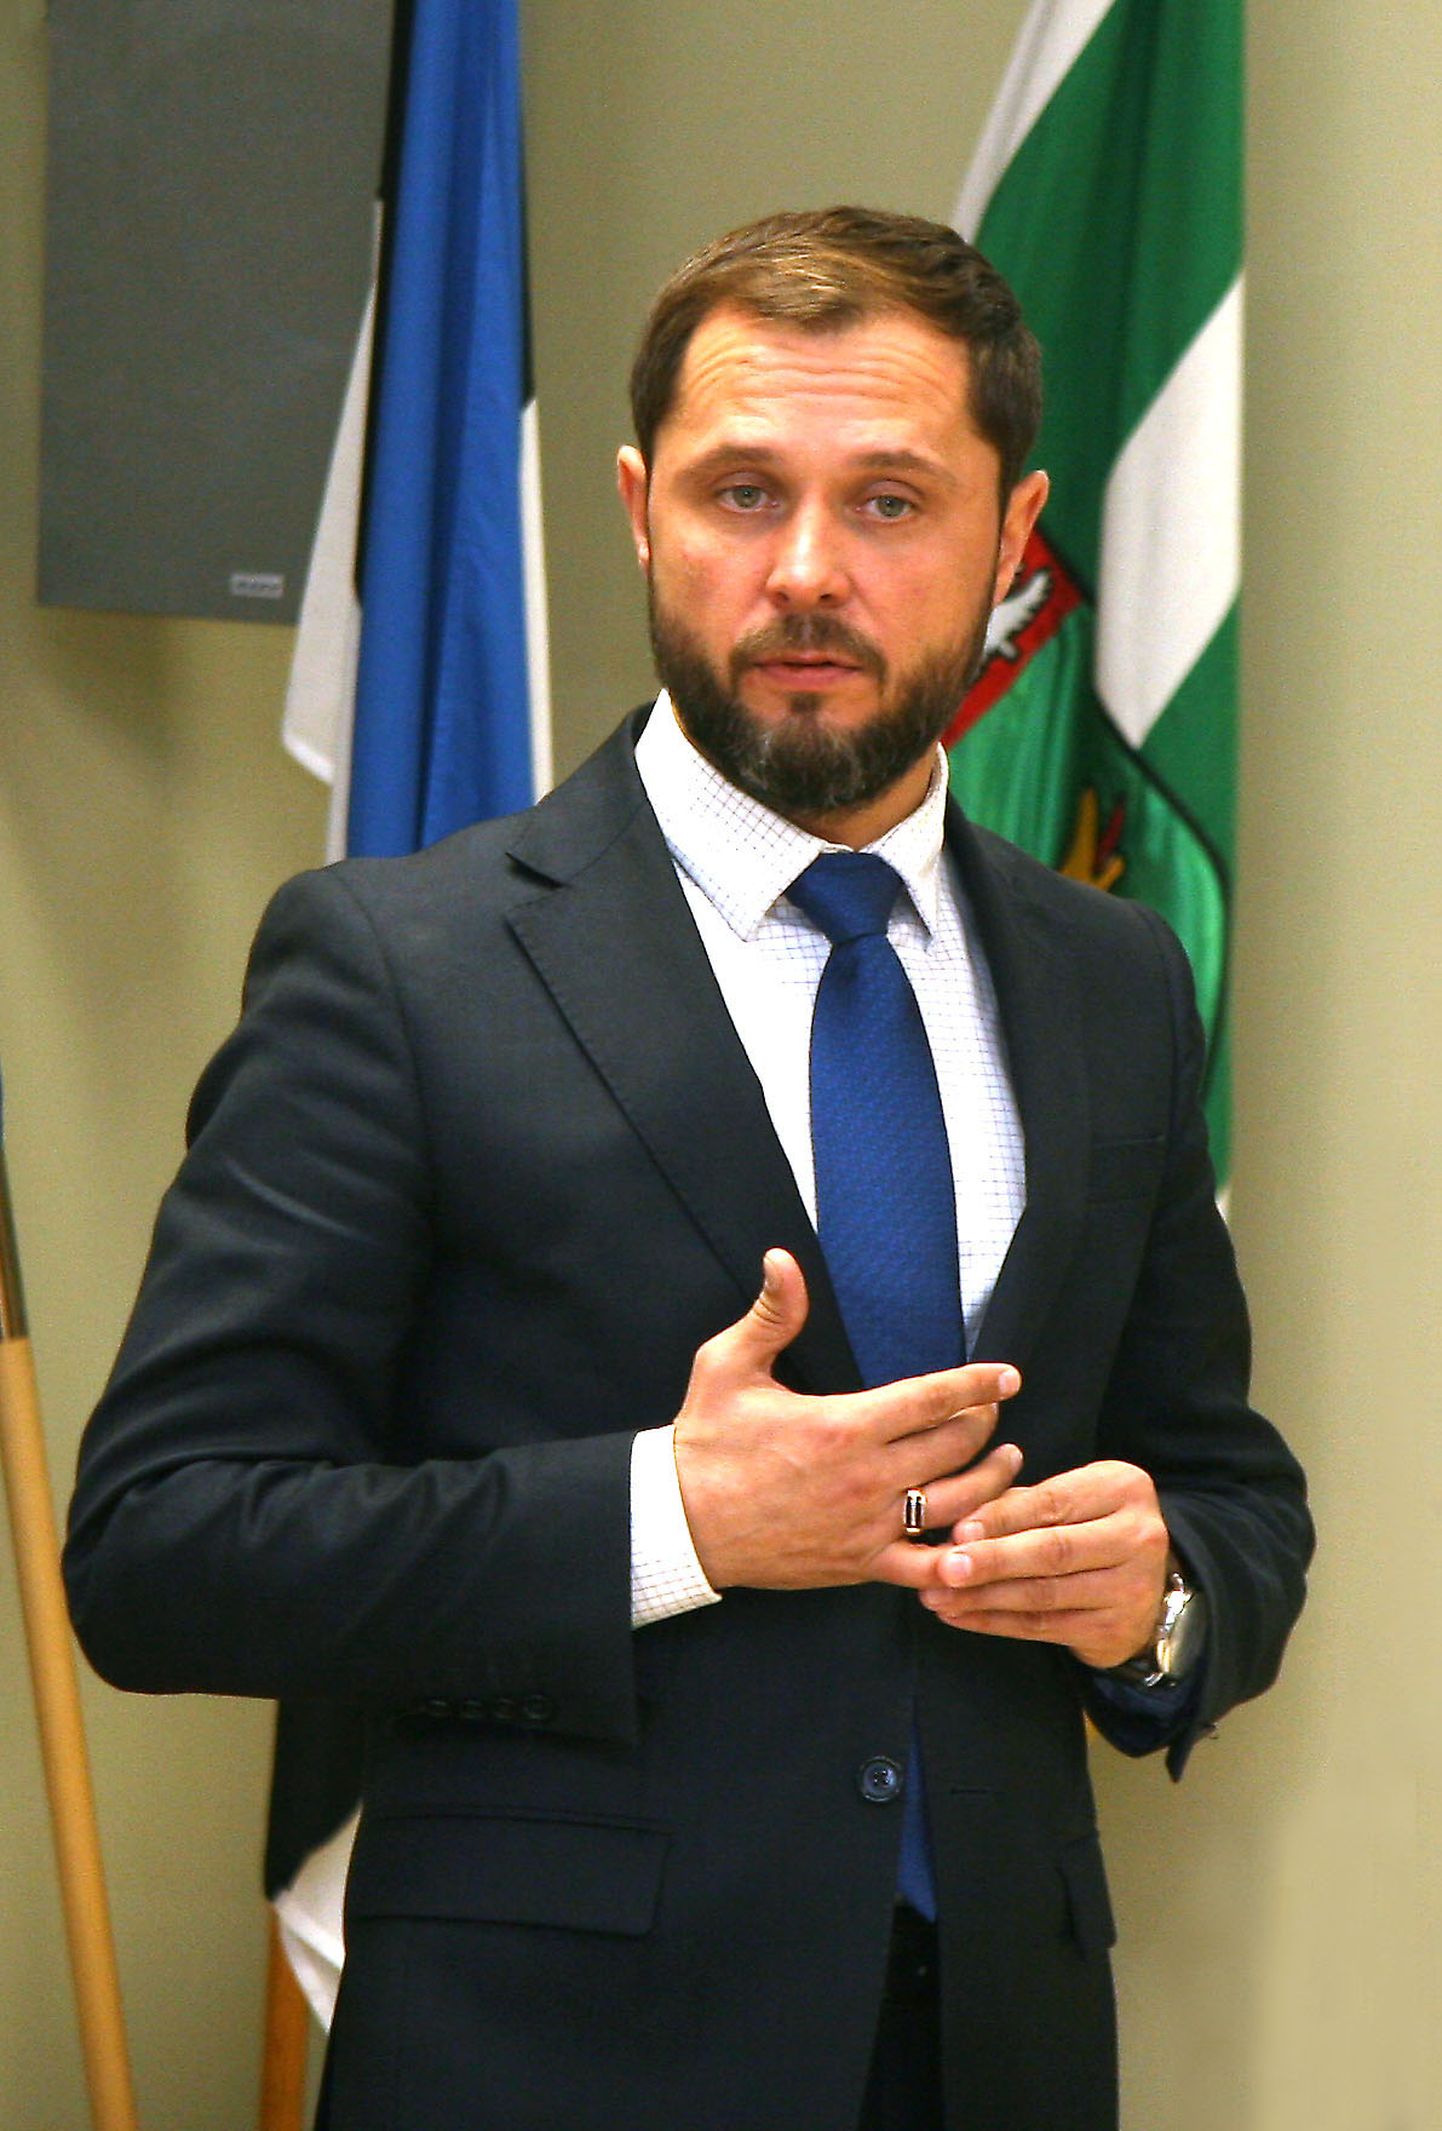 Aleksei Naumkin on olnud nii Jõhvi vallavanem kui ka volikogu esimees. Praegu täidab ta aga volikogus esiopositsionääri rolli.